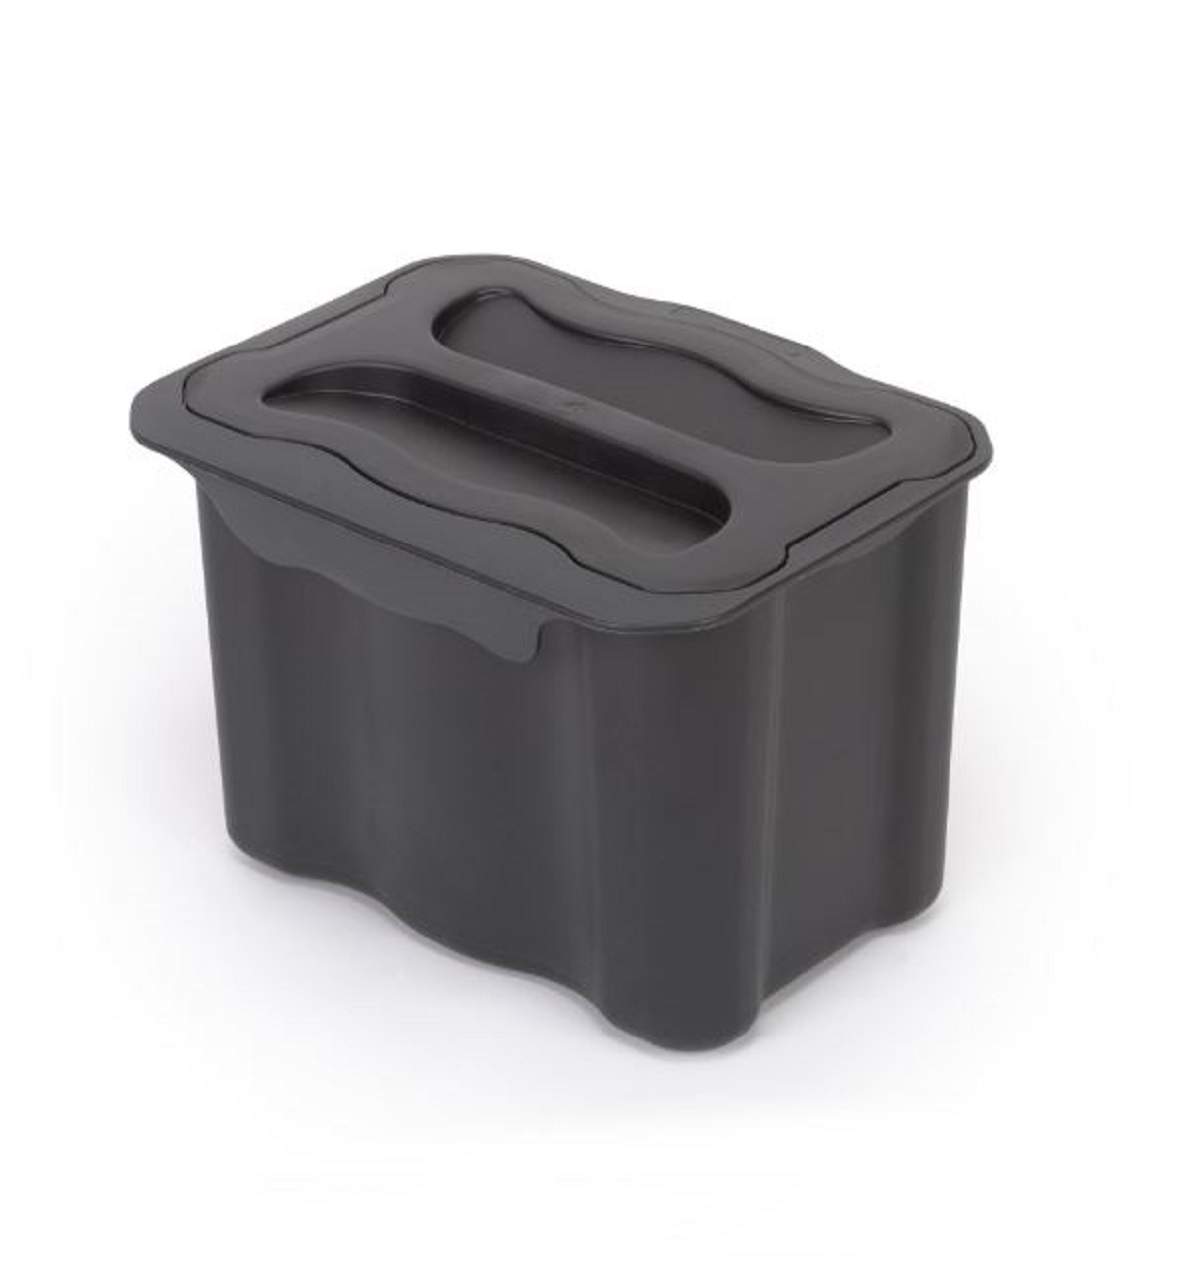 Kunststoff-Hilfseimer für Küchenrecycling, 5 Liter, anthrazitgrau